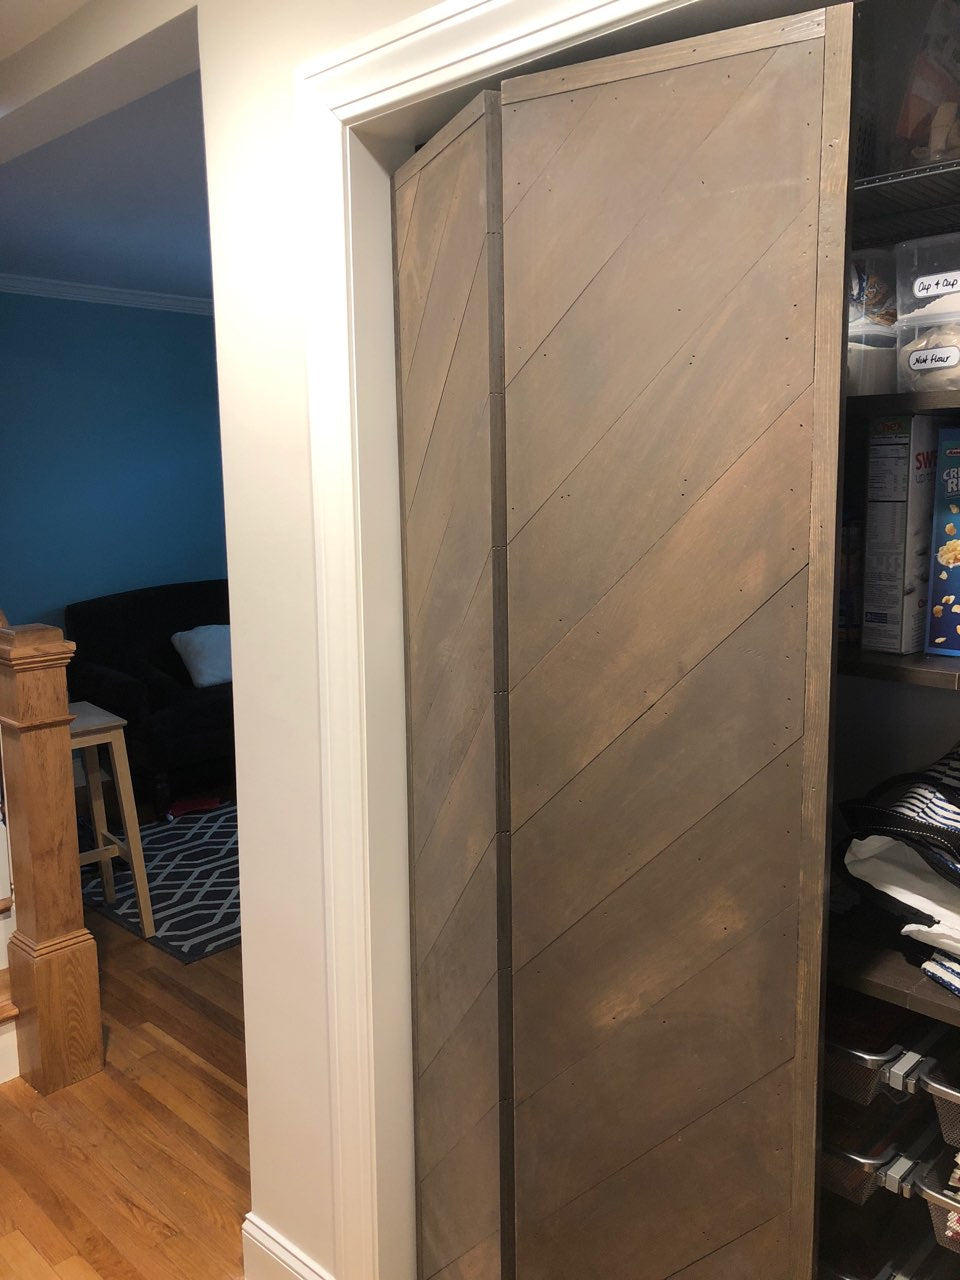 width of bifold closet doors